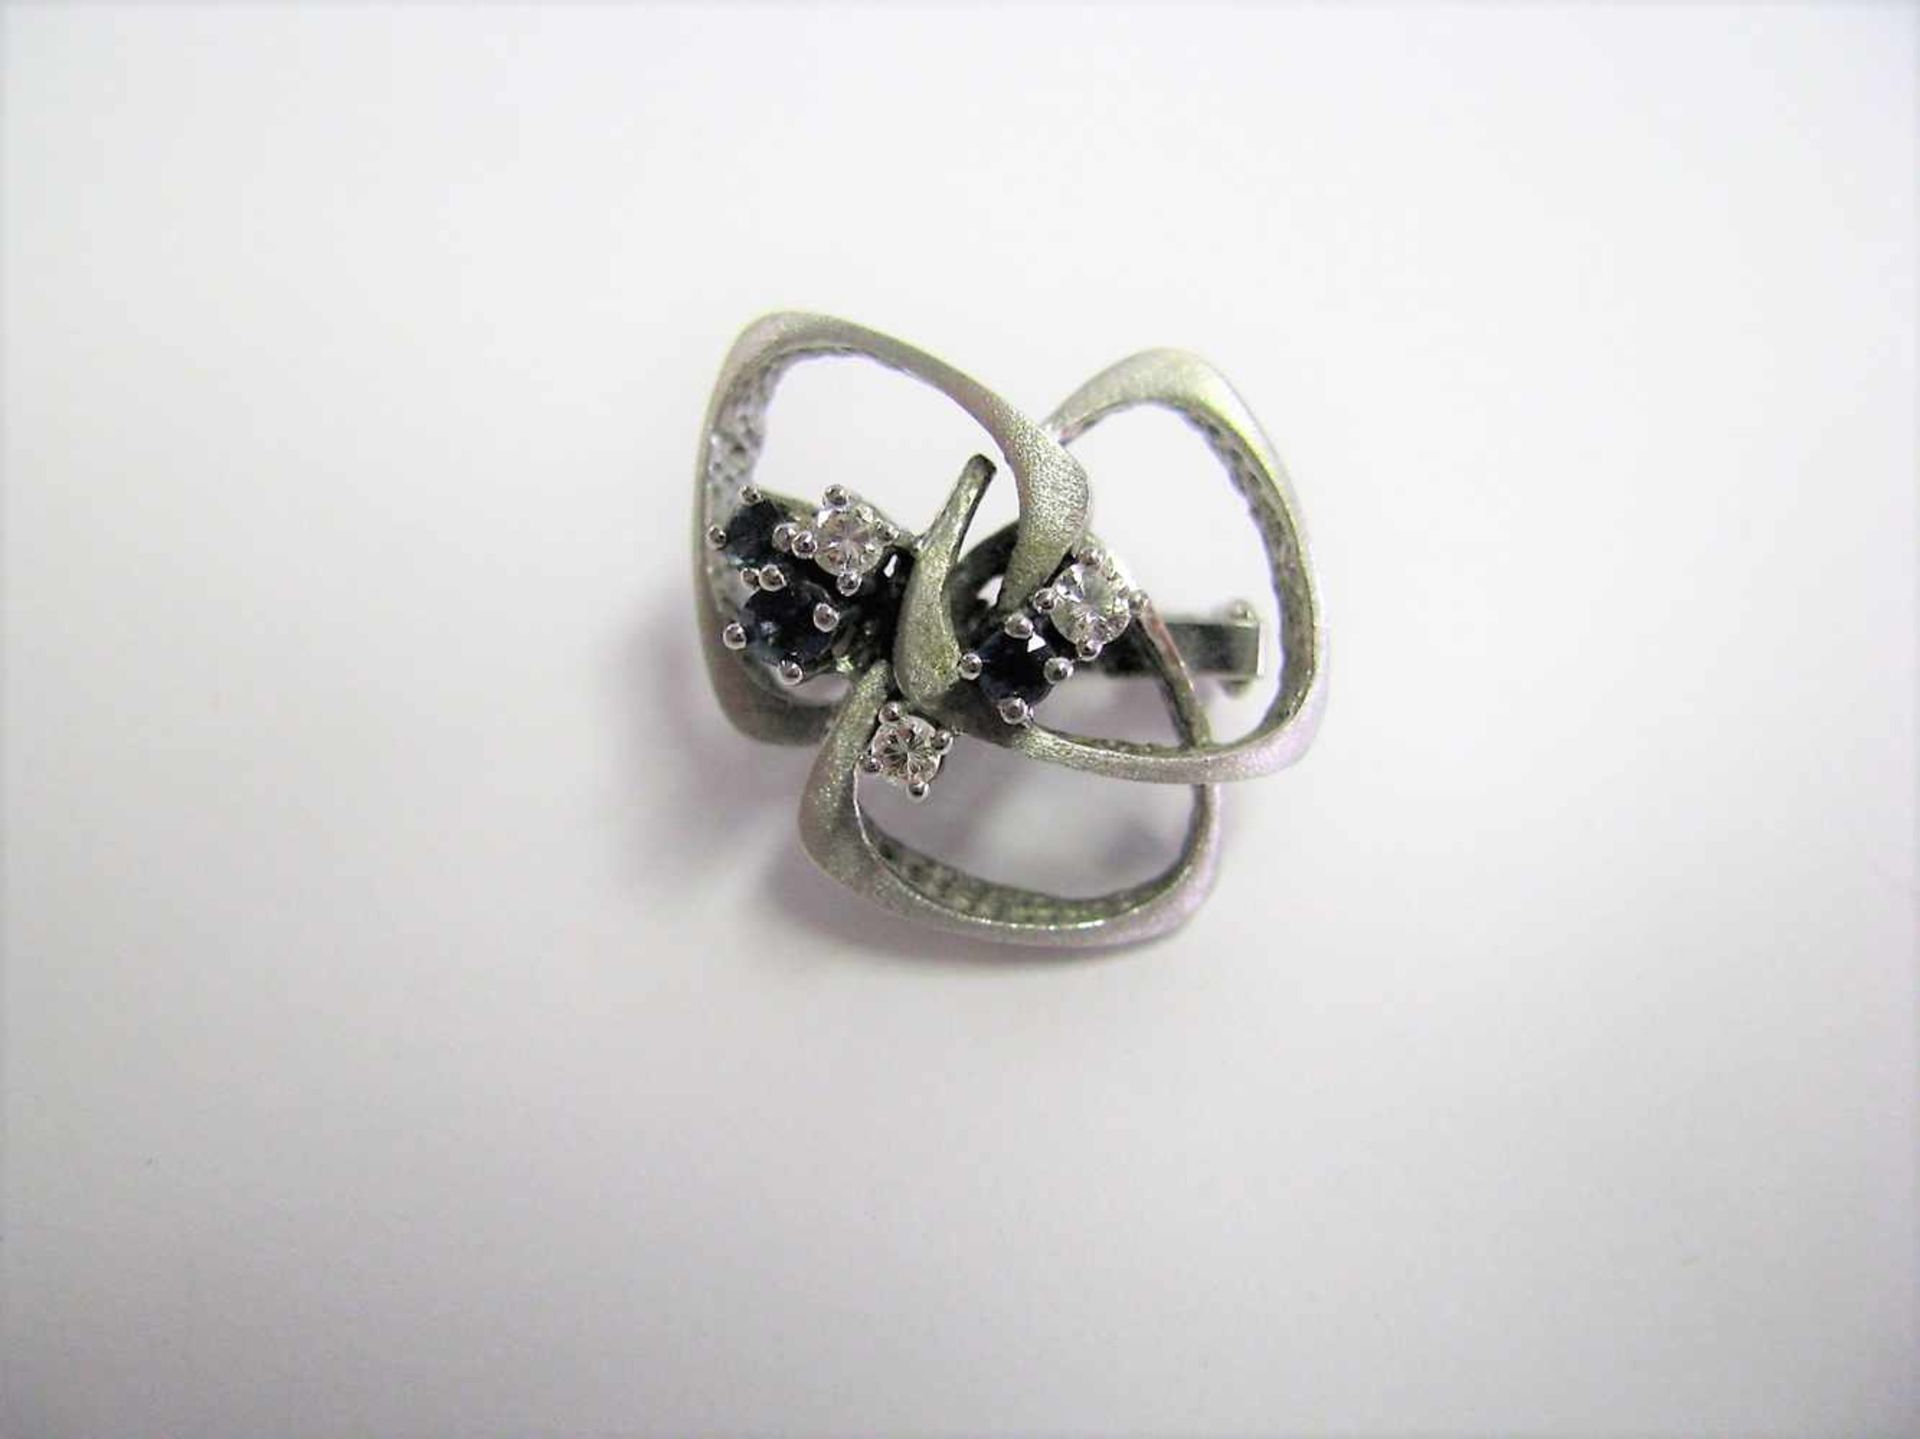 Perlenkettenclip mit 3 Saphiren und 3 Brillanten, Saphire zus.ca. 0,12 ct, Brillanten zus.ca. 0,12